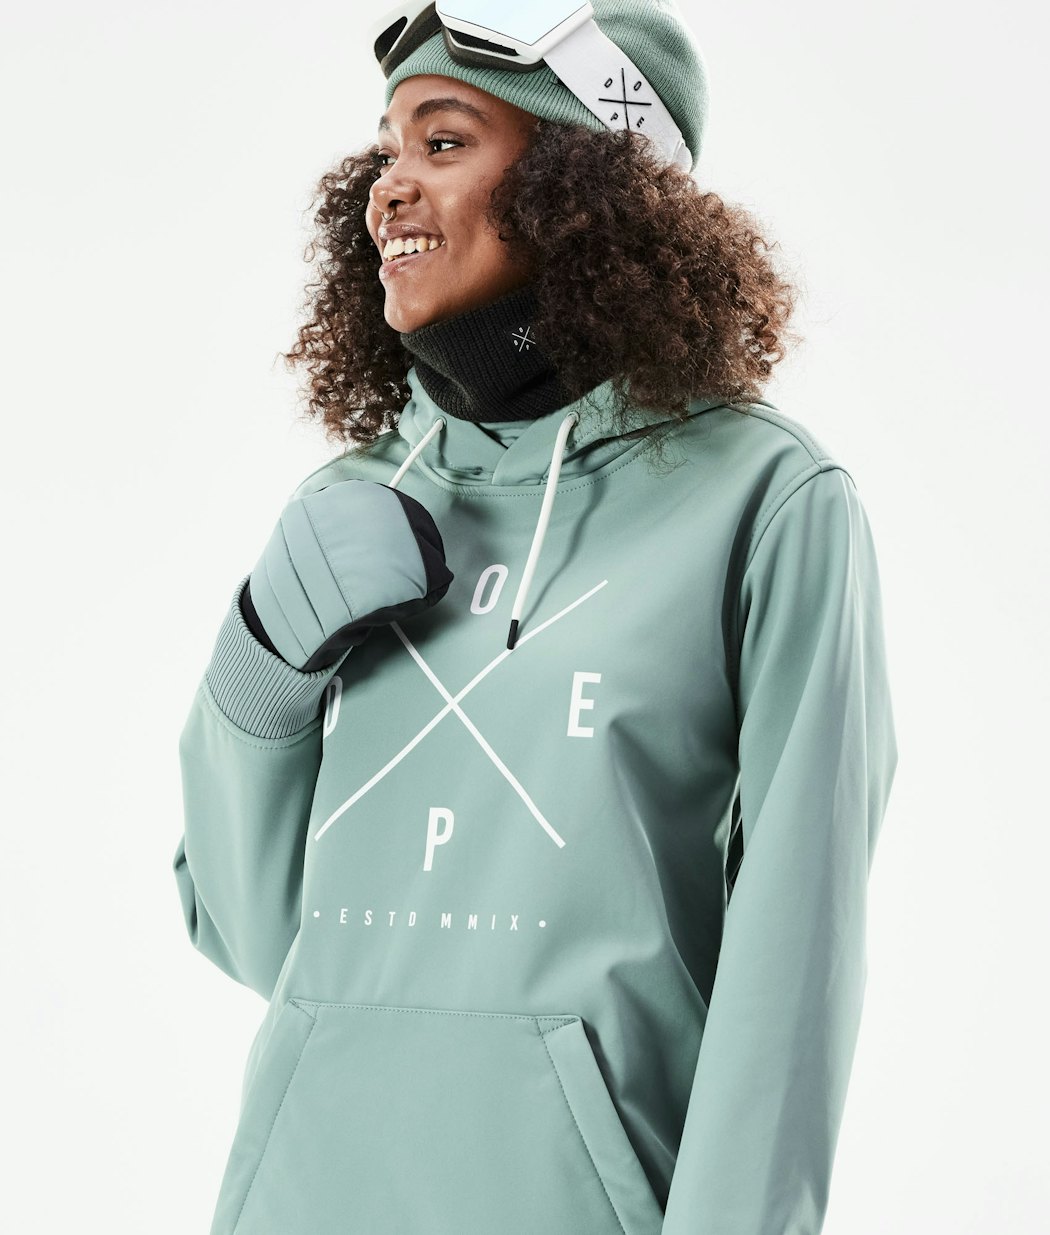 Yeti W 10k Snowboard Jacket Women Faded Green